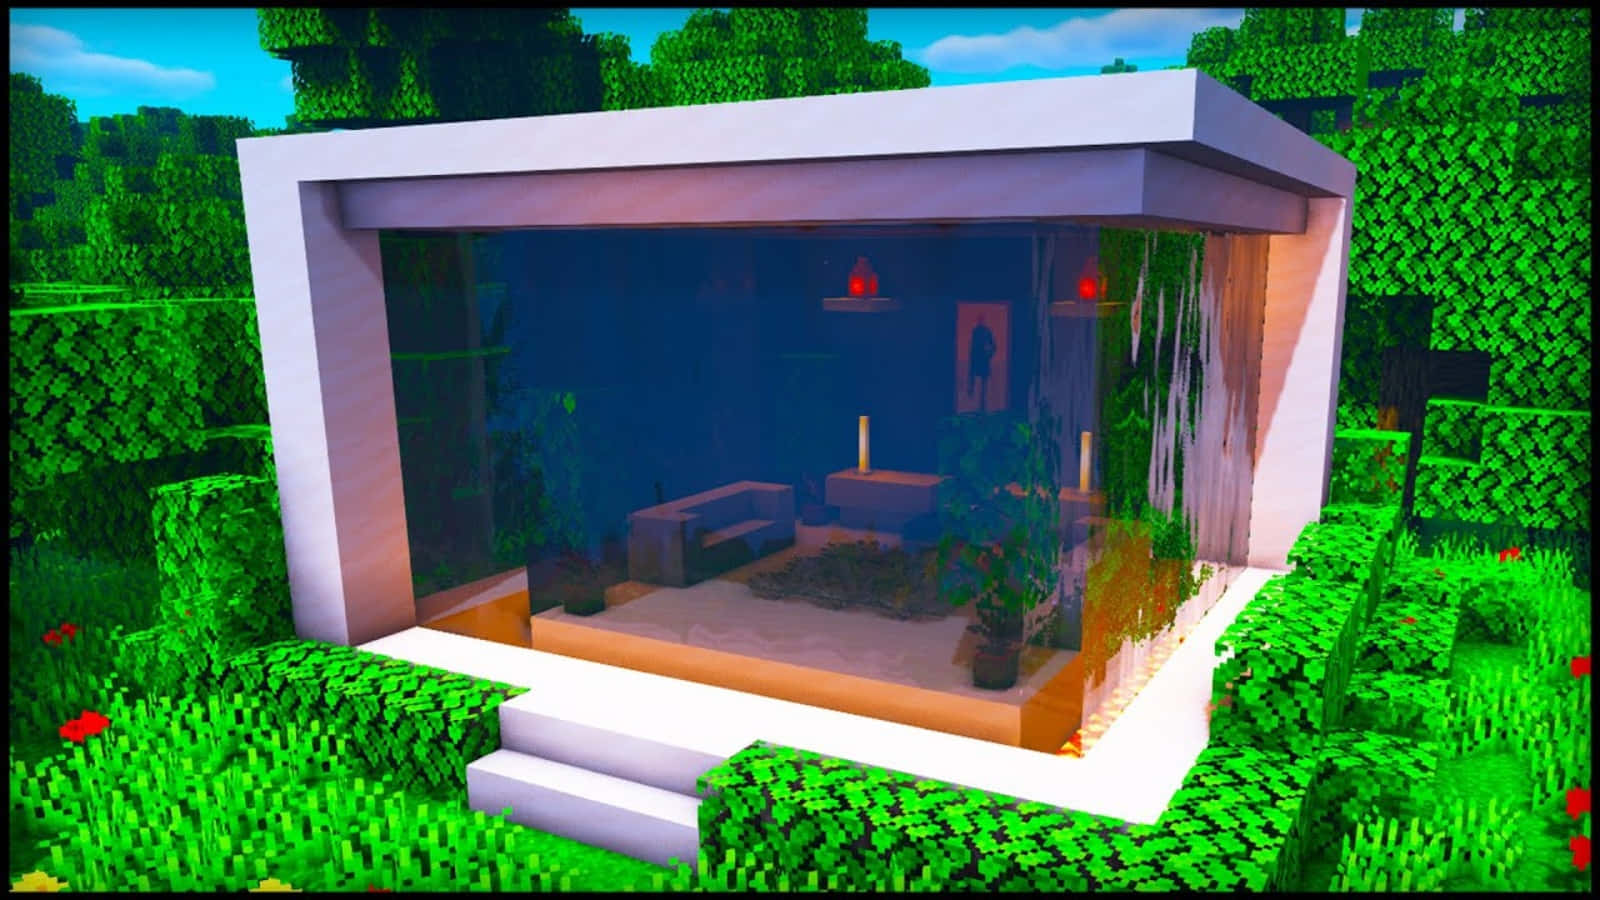 Unapequeña Casa En Minecraft Con Una Ventana De Cristal